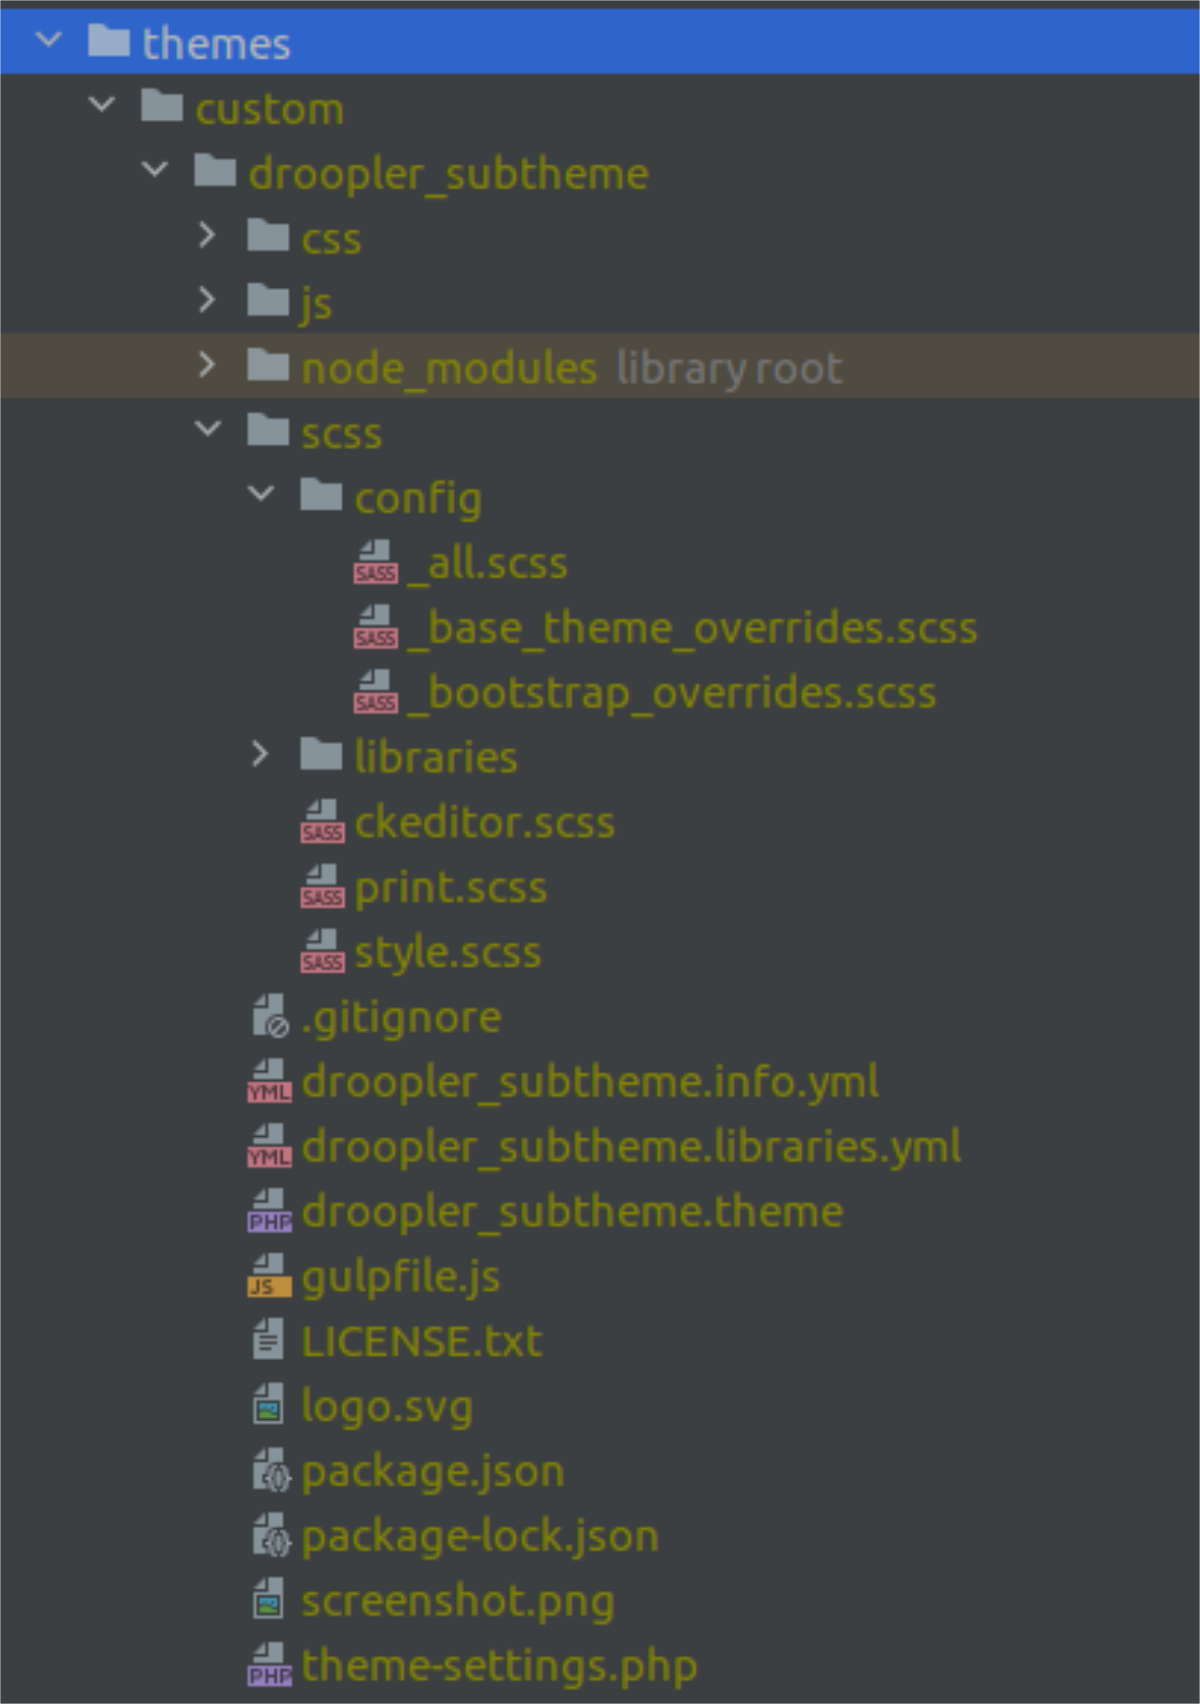 Struktura plików podskórki Drooplera z plikami _base_theme_overrides.scss i _bootstrap_overrides.scss